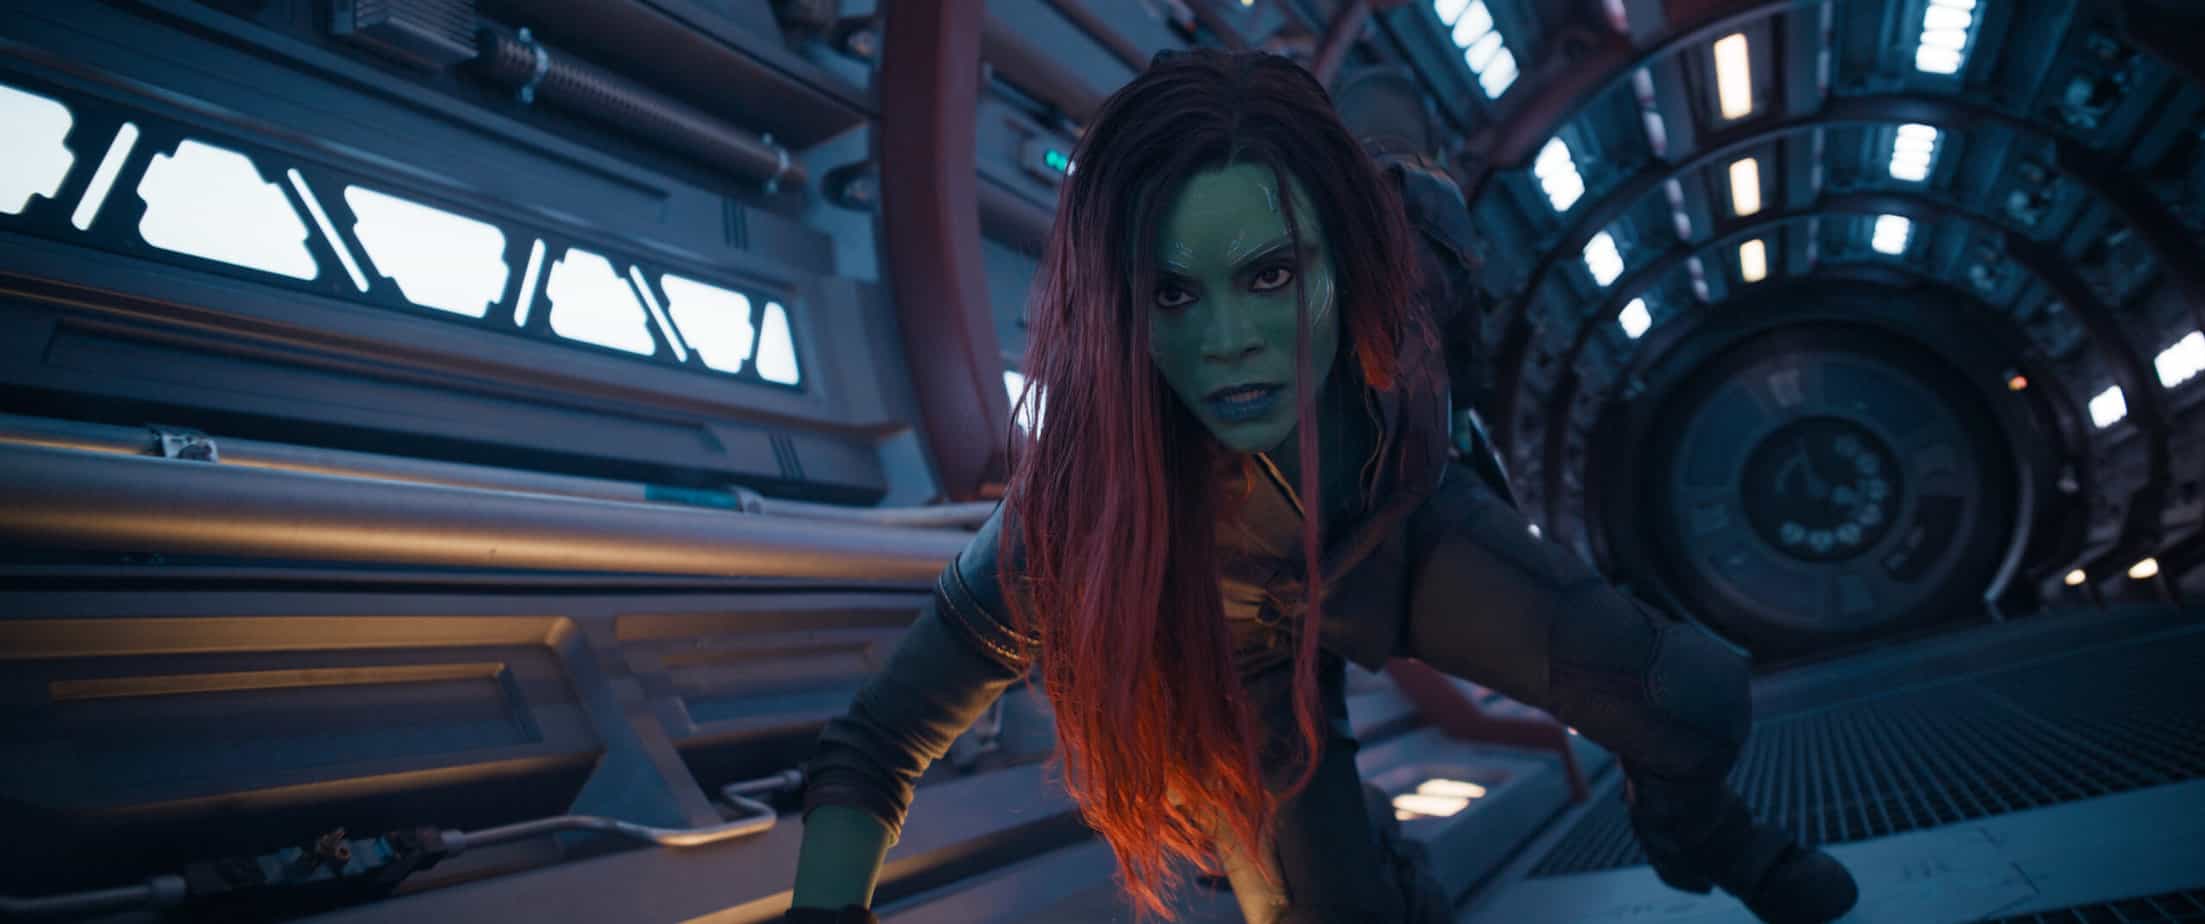 Zoe Saldana as Gamora in Marvel Studios' Guardians of the Galaxy Vol. 3 movie quotes